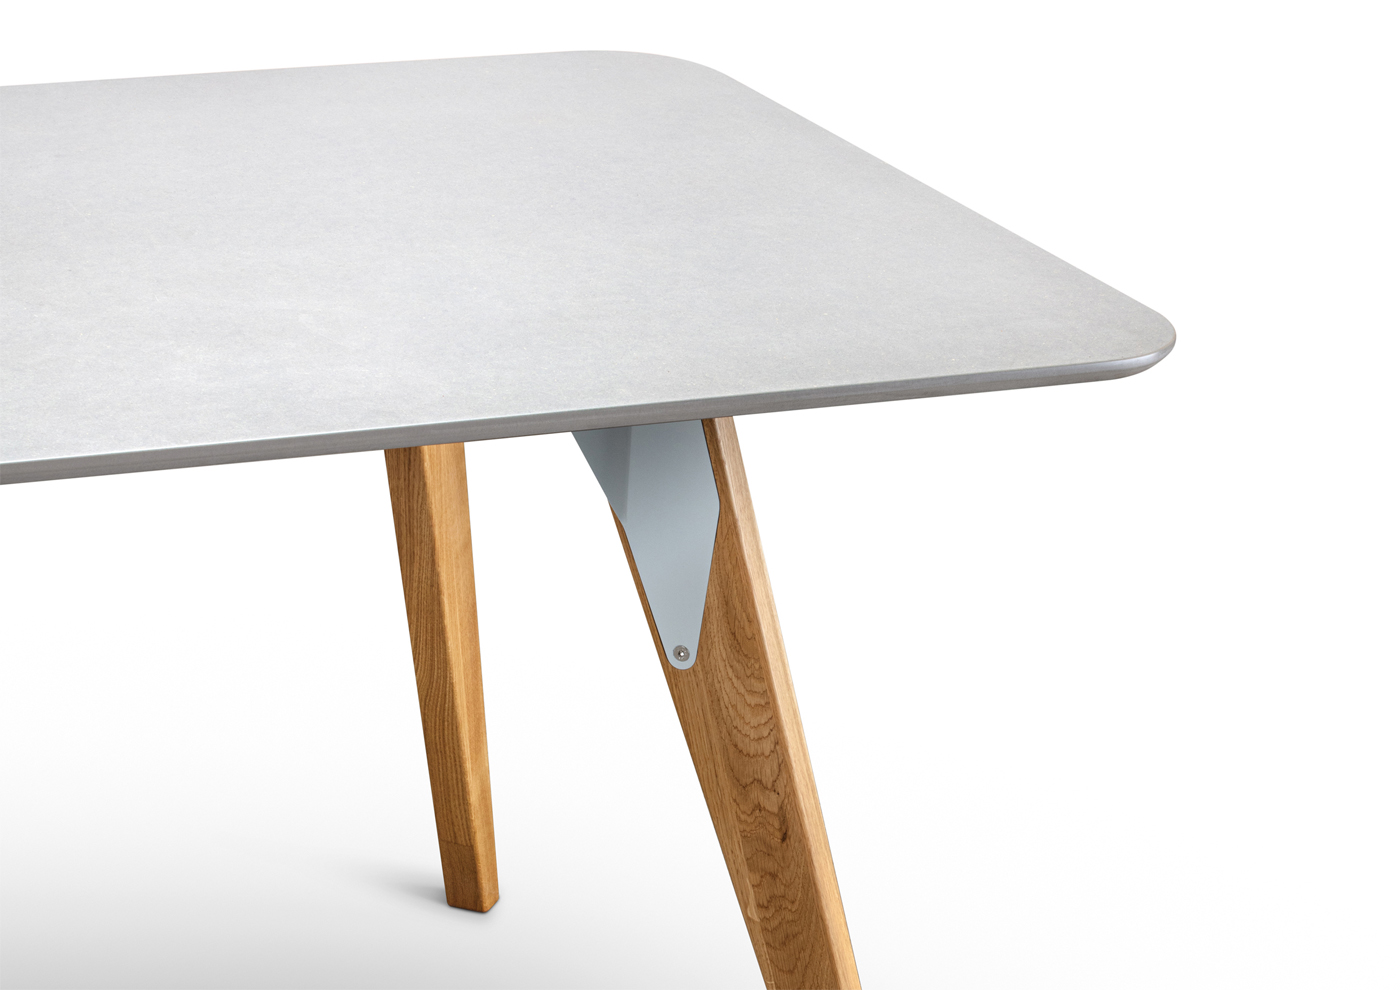 Magnolia Table - view4 - Davide Mezzasalma - Furniture design - Berlin